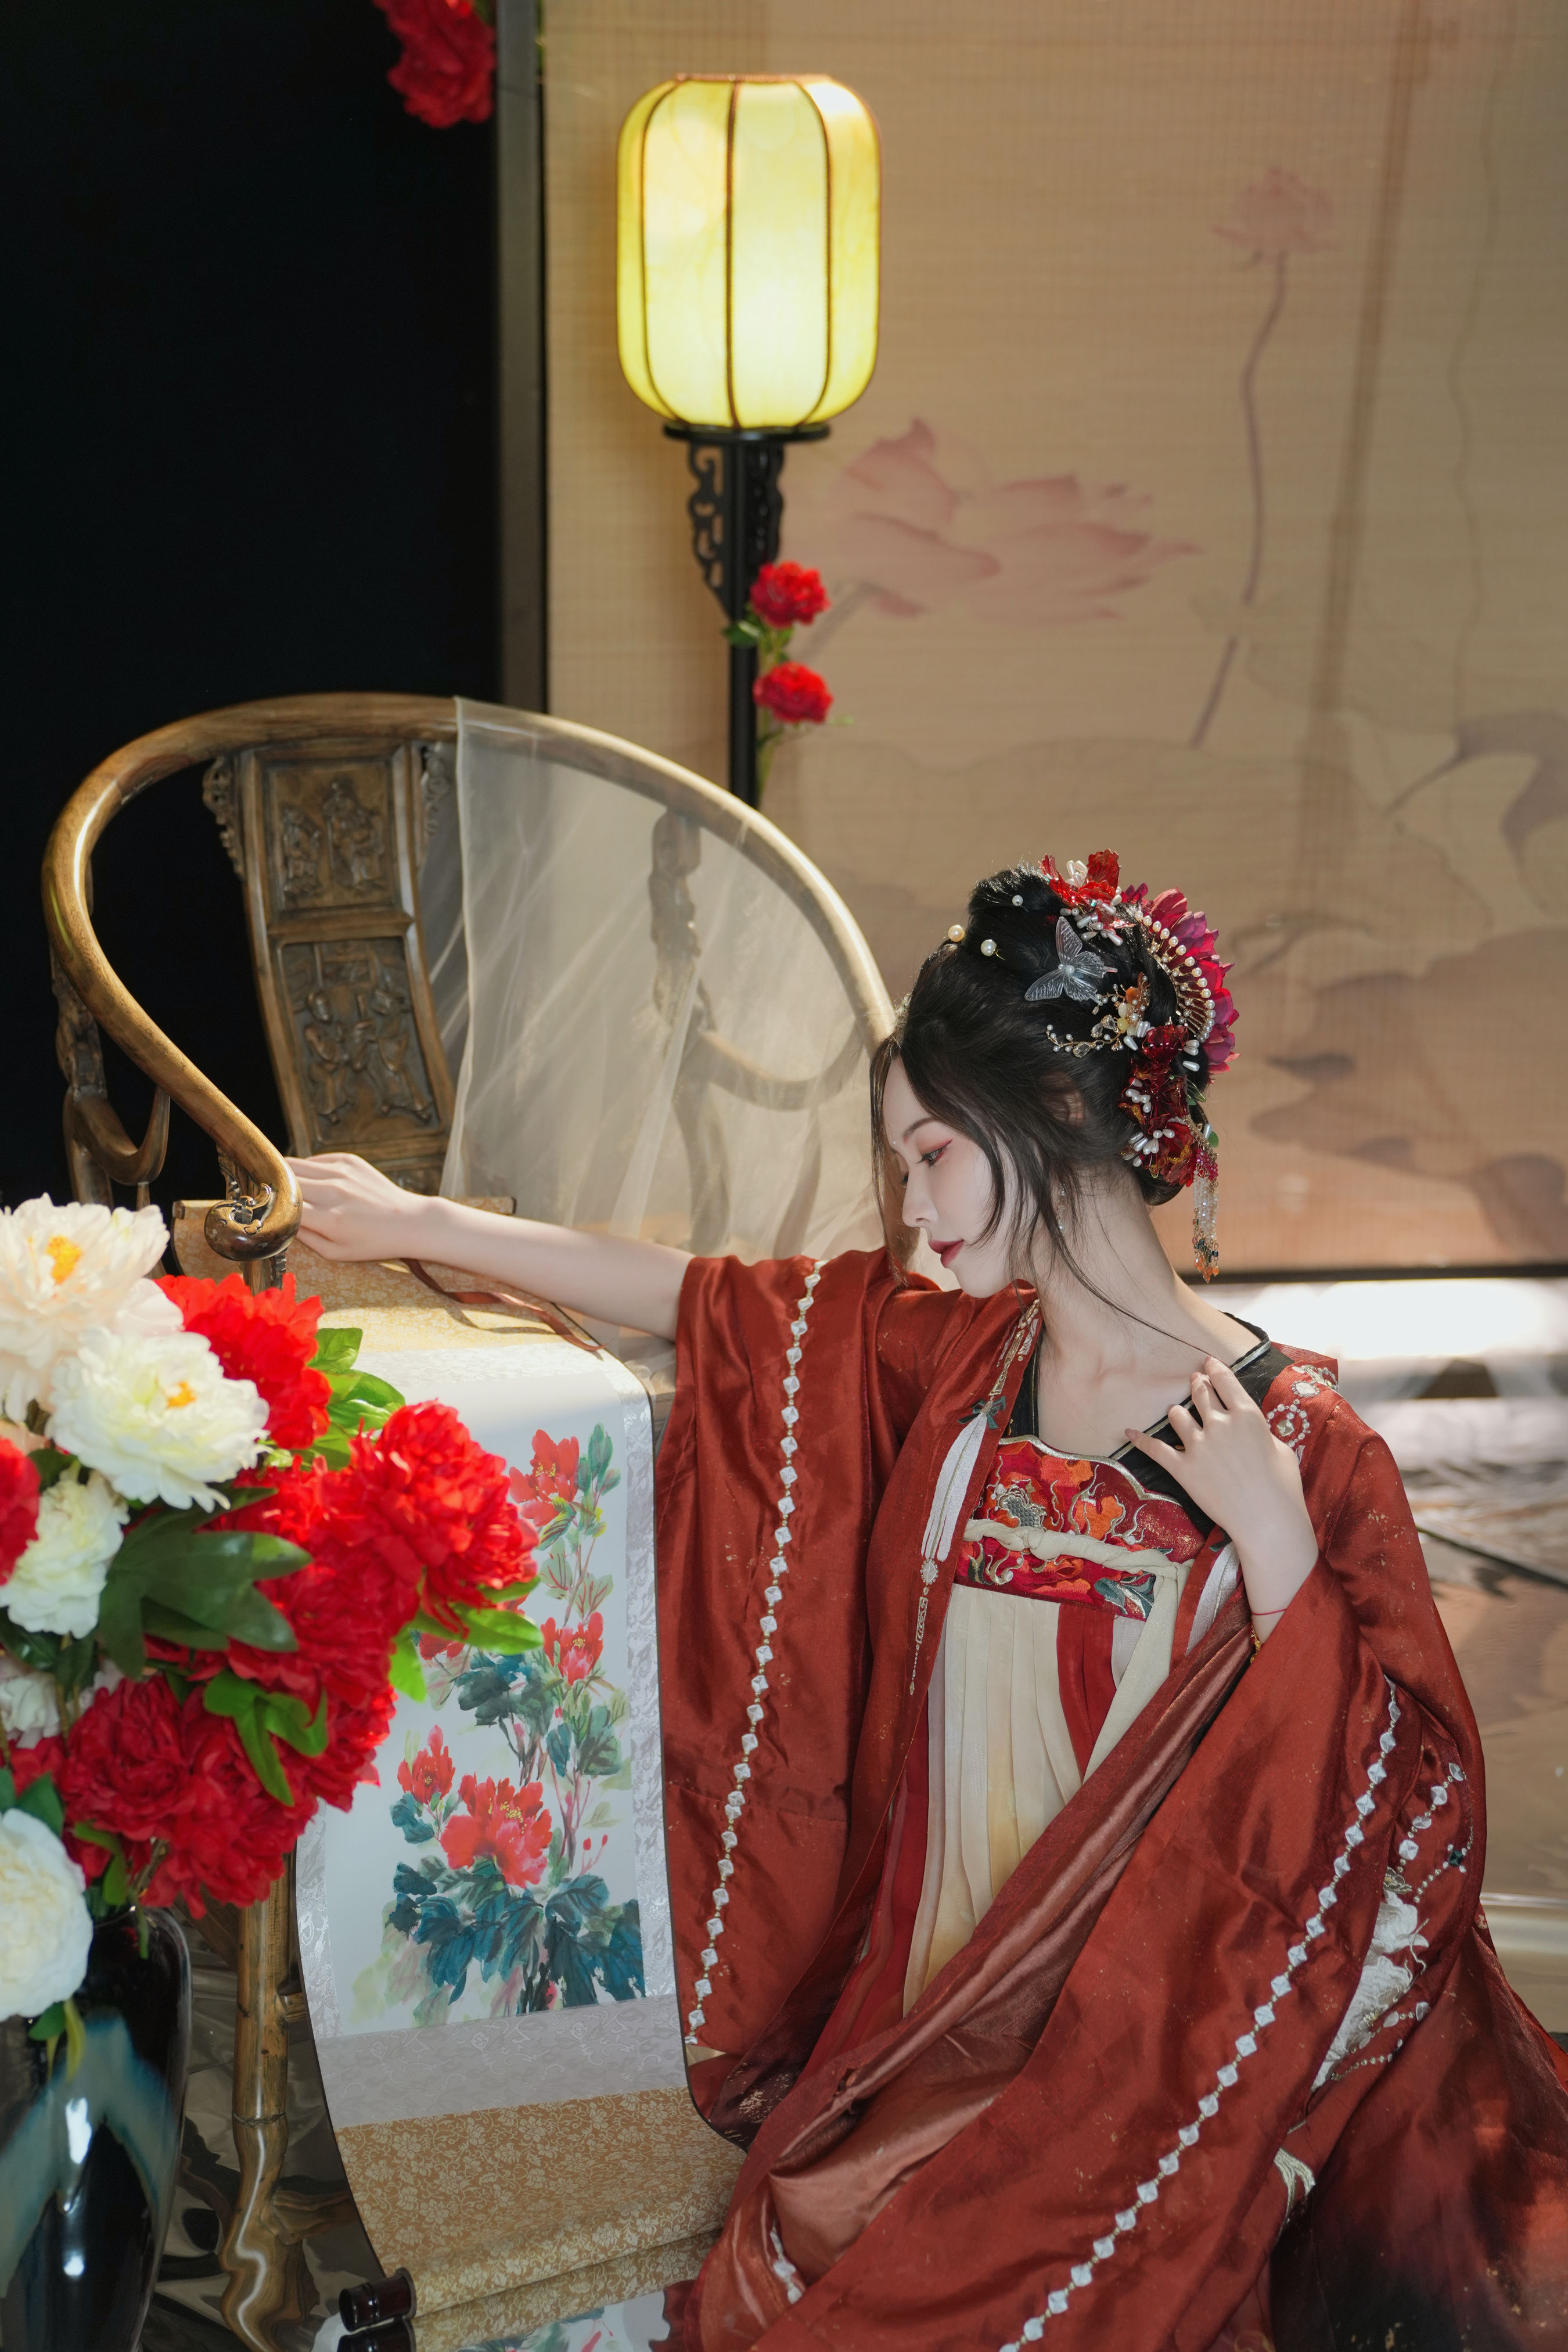 十二花神之牡丹花神 古装 花 中国风 美人 模特 写真 红色 女神